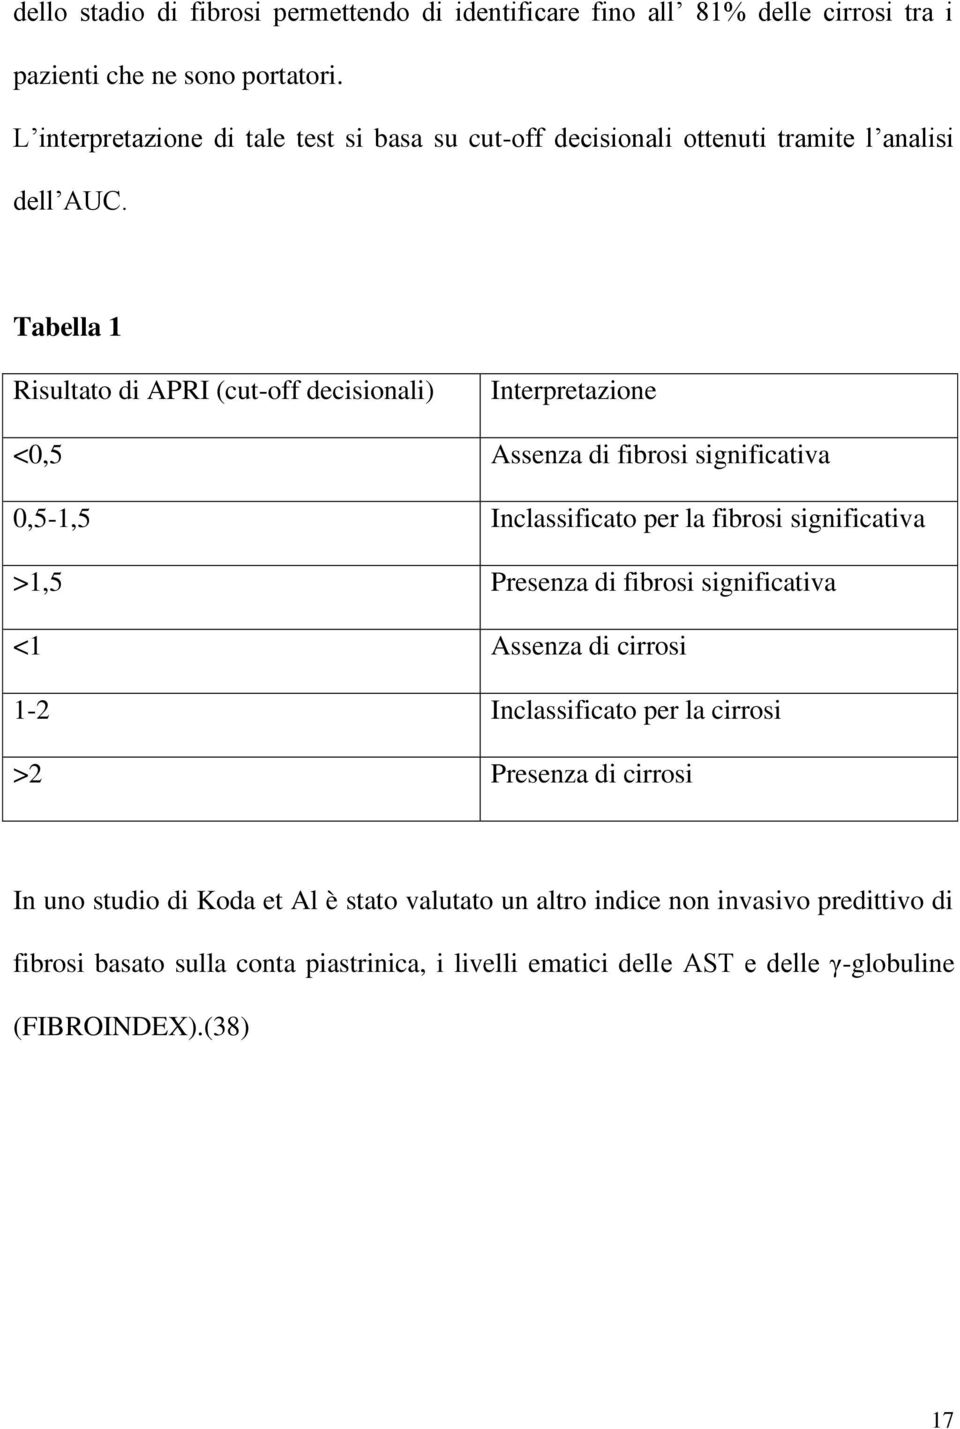 Tabella 1 Risultato di APRI (cut-off decisionali) Interpretazione <0,5 Assenza di fibrosi significativa 0,5-1,5 Inclassificato per la fibrosi significativa >1,5 Presenza